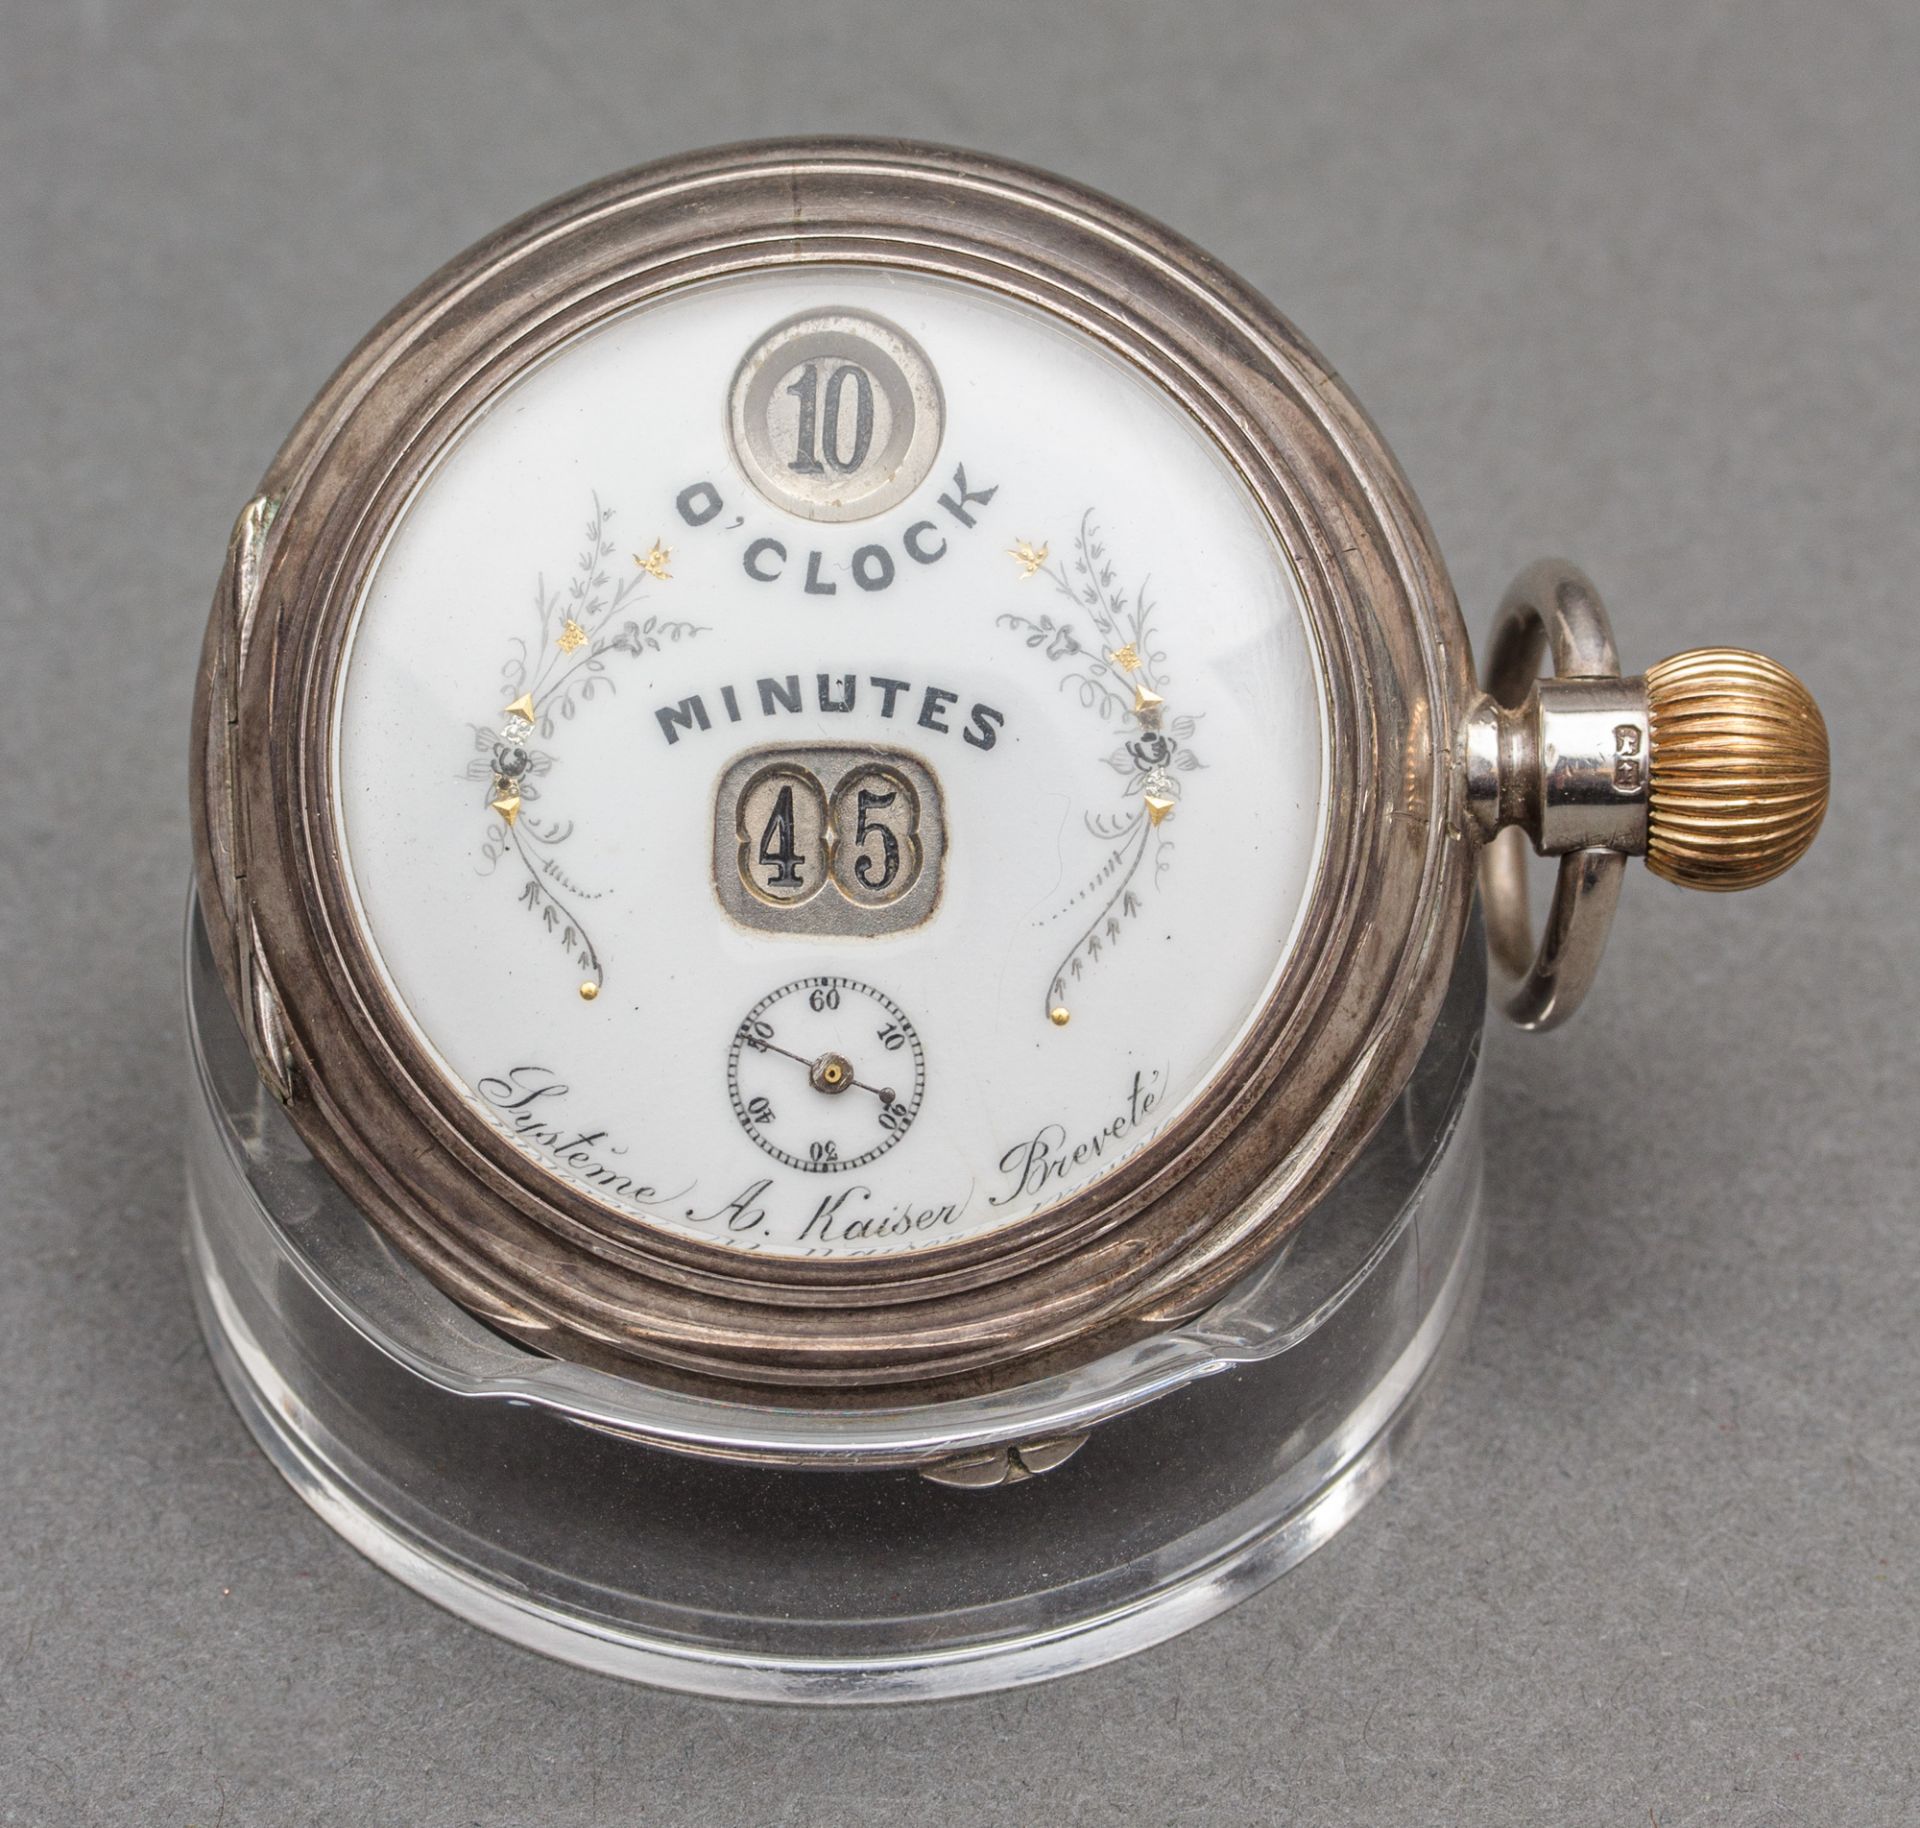 Silbertaschenuhr mit springender Stunde und Minute, Systeme A. Kaiser Brevete, 1897